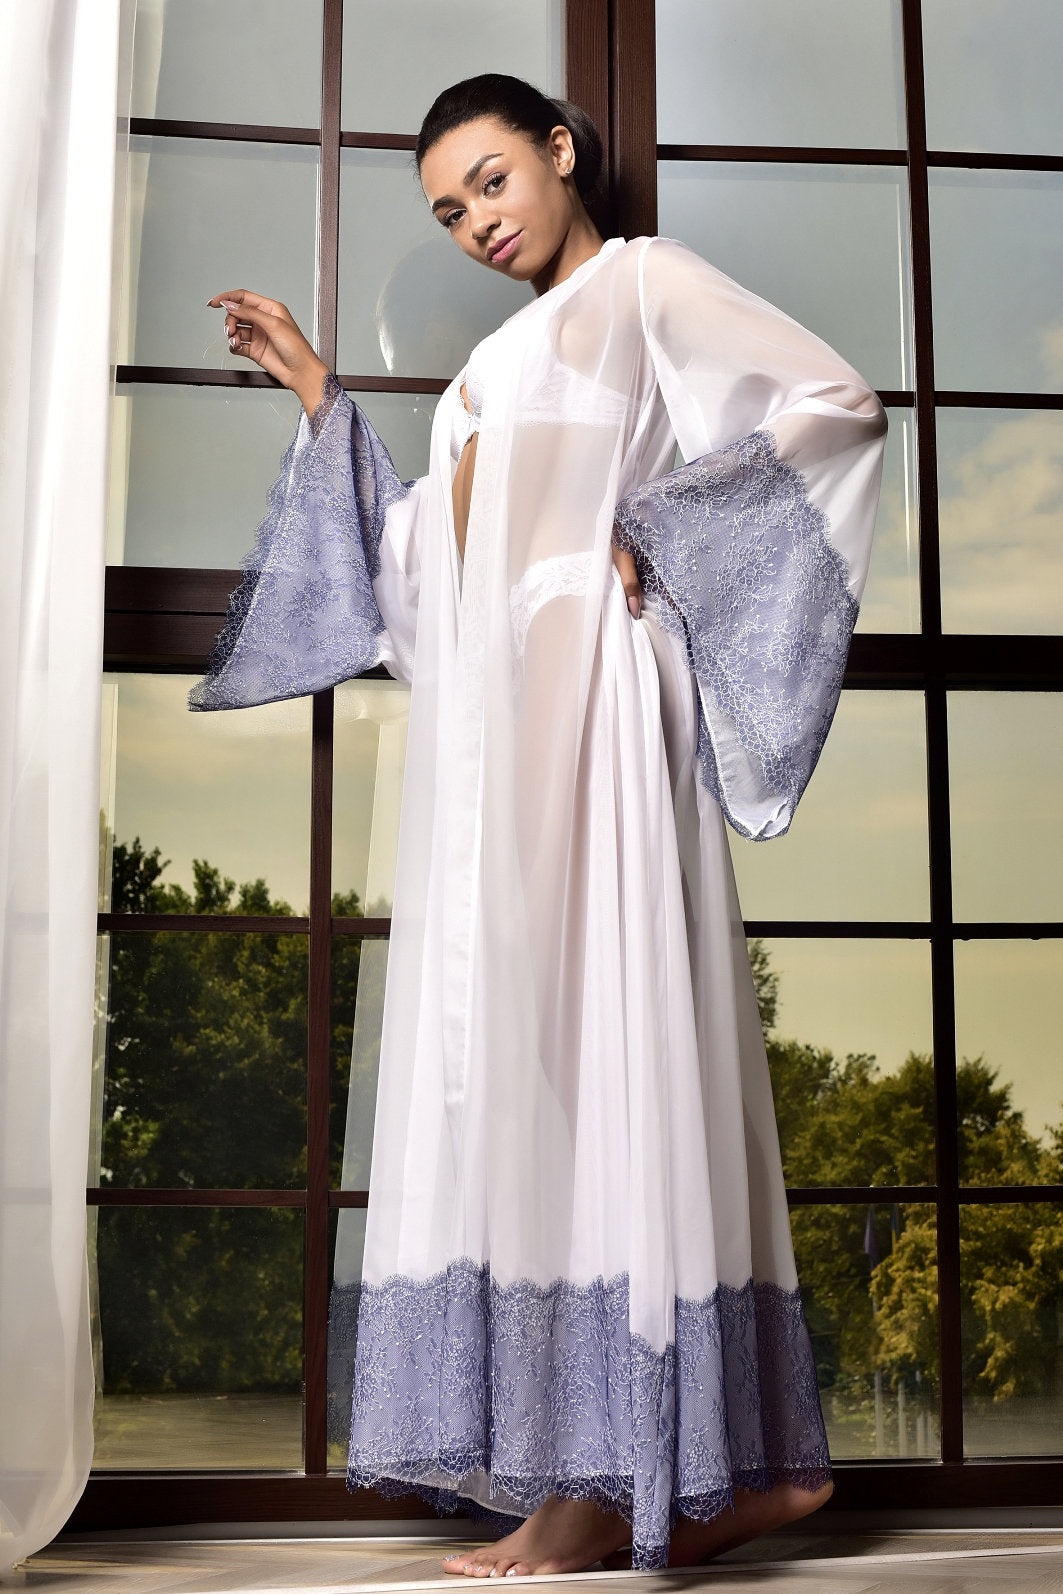 White Bridal Chiffon Kimono Robe with Blue Lace-Trim - Front View